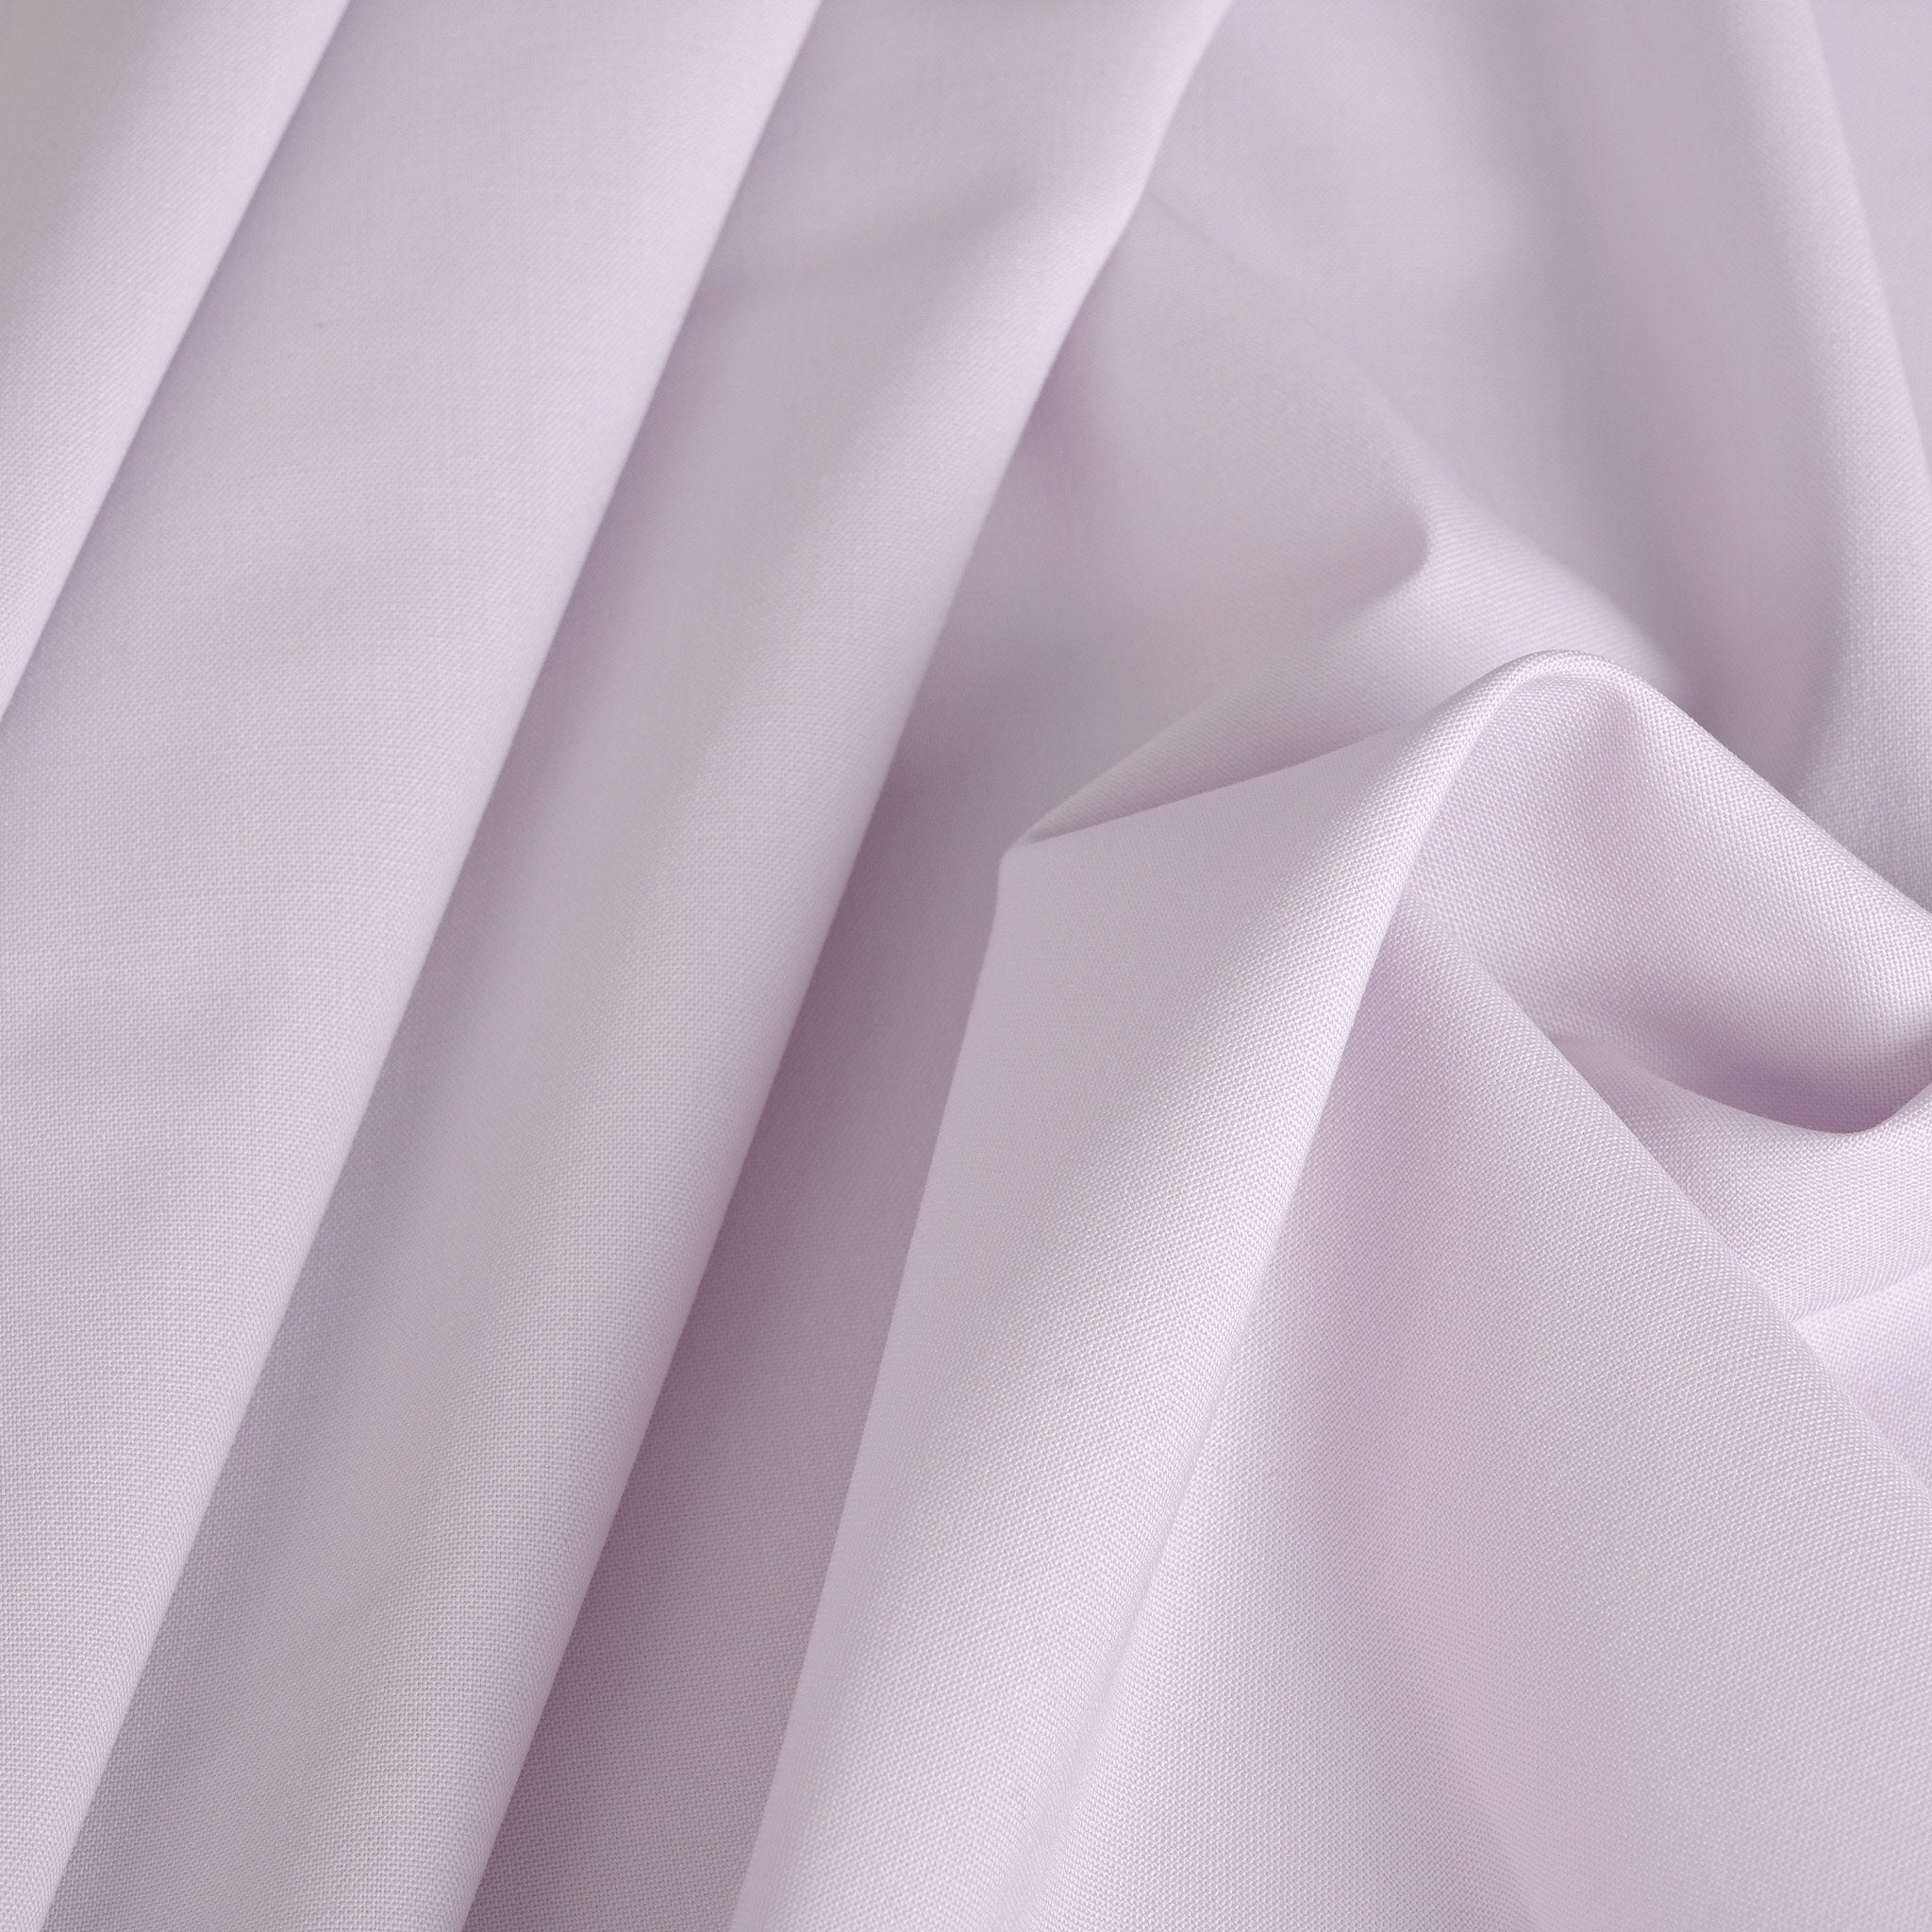 Lavanda Stretch Suiting Fabric 4653